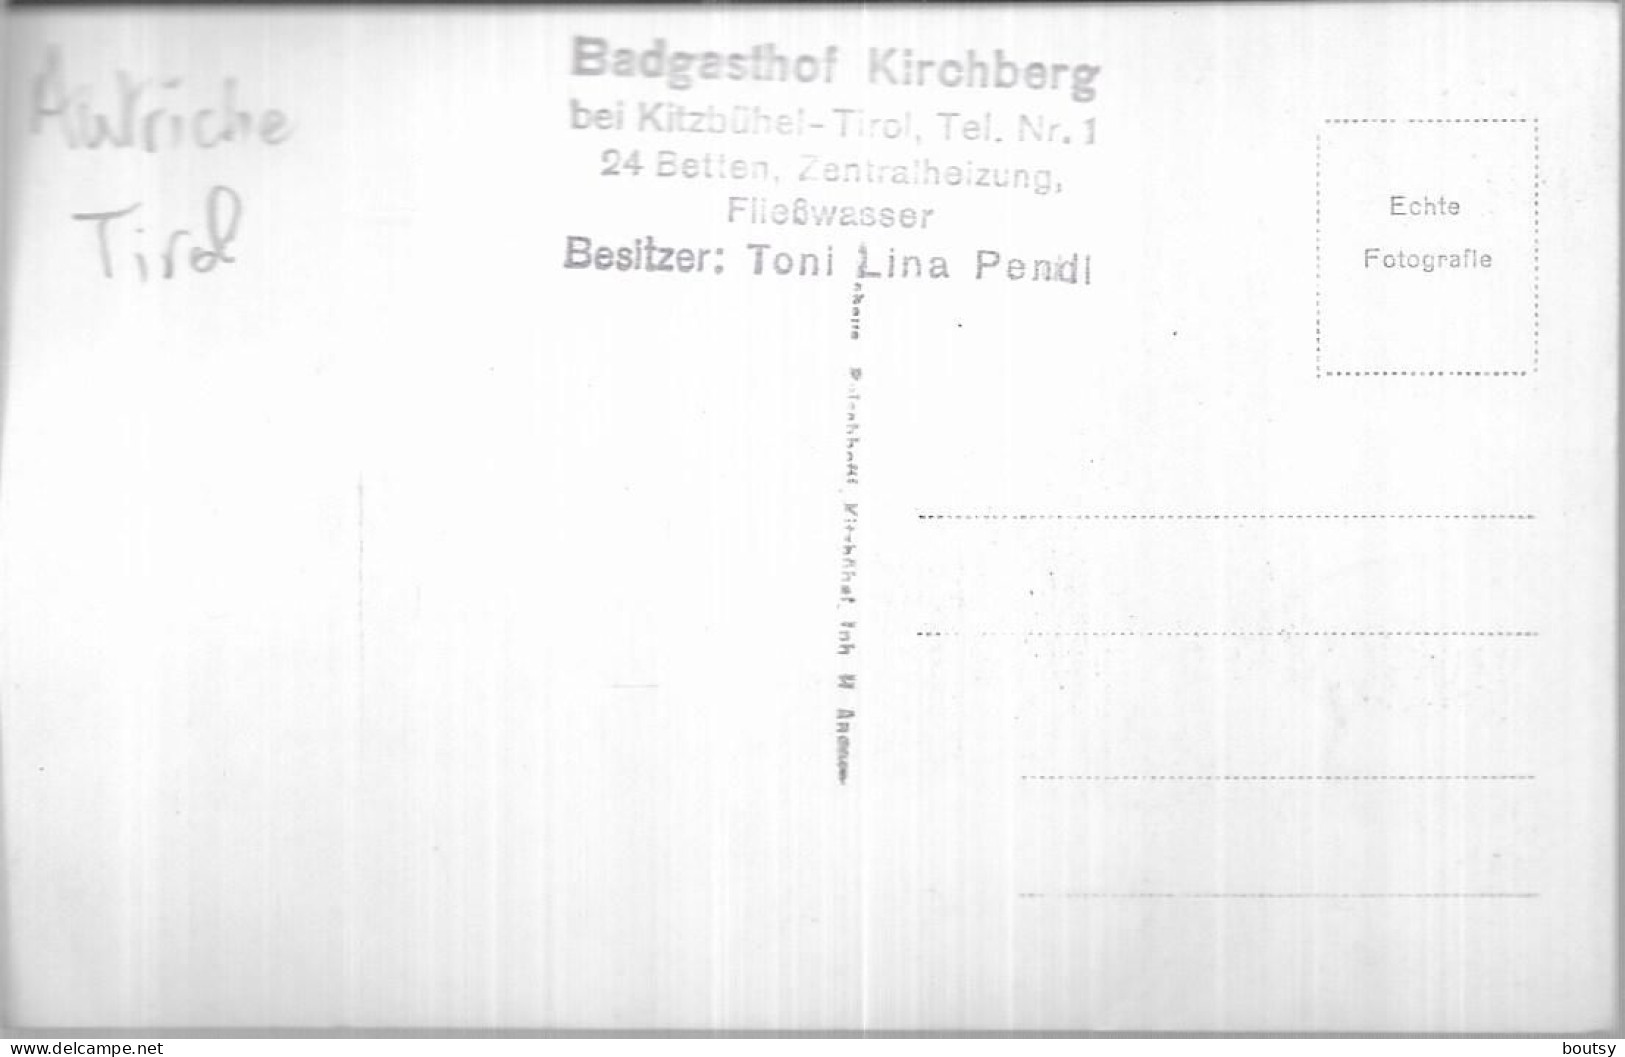 Badgasthof Kirchberg - Kitzbühel